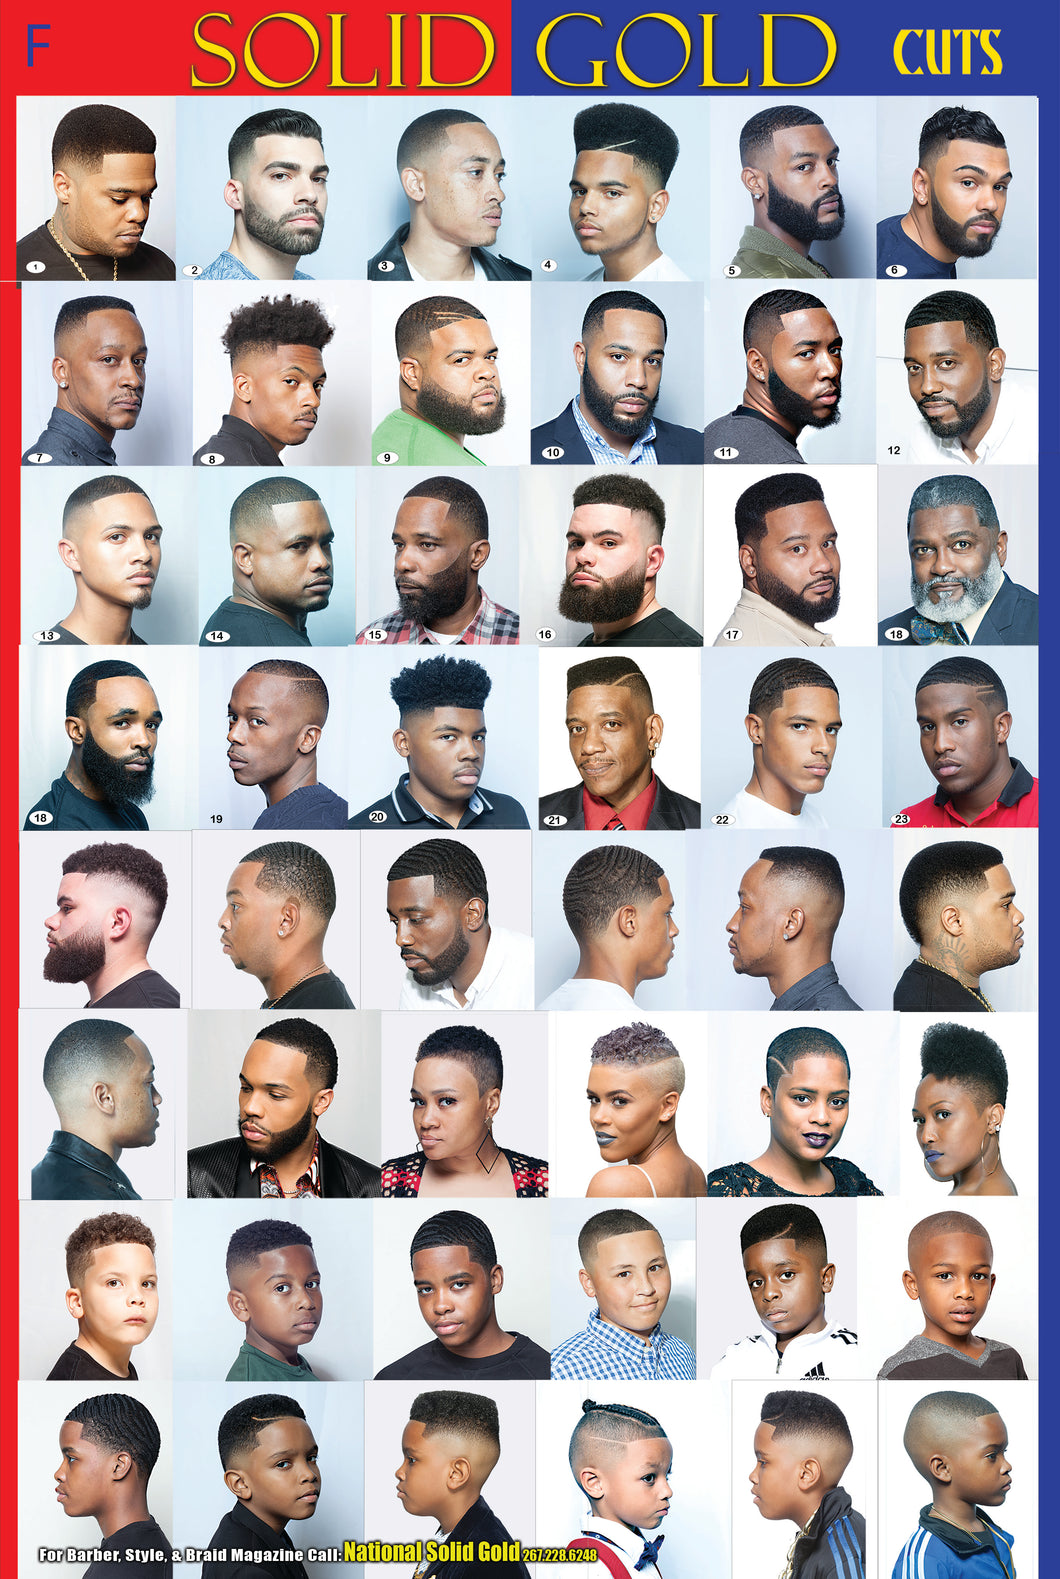 barbershop haircut poster